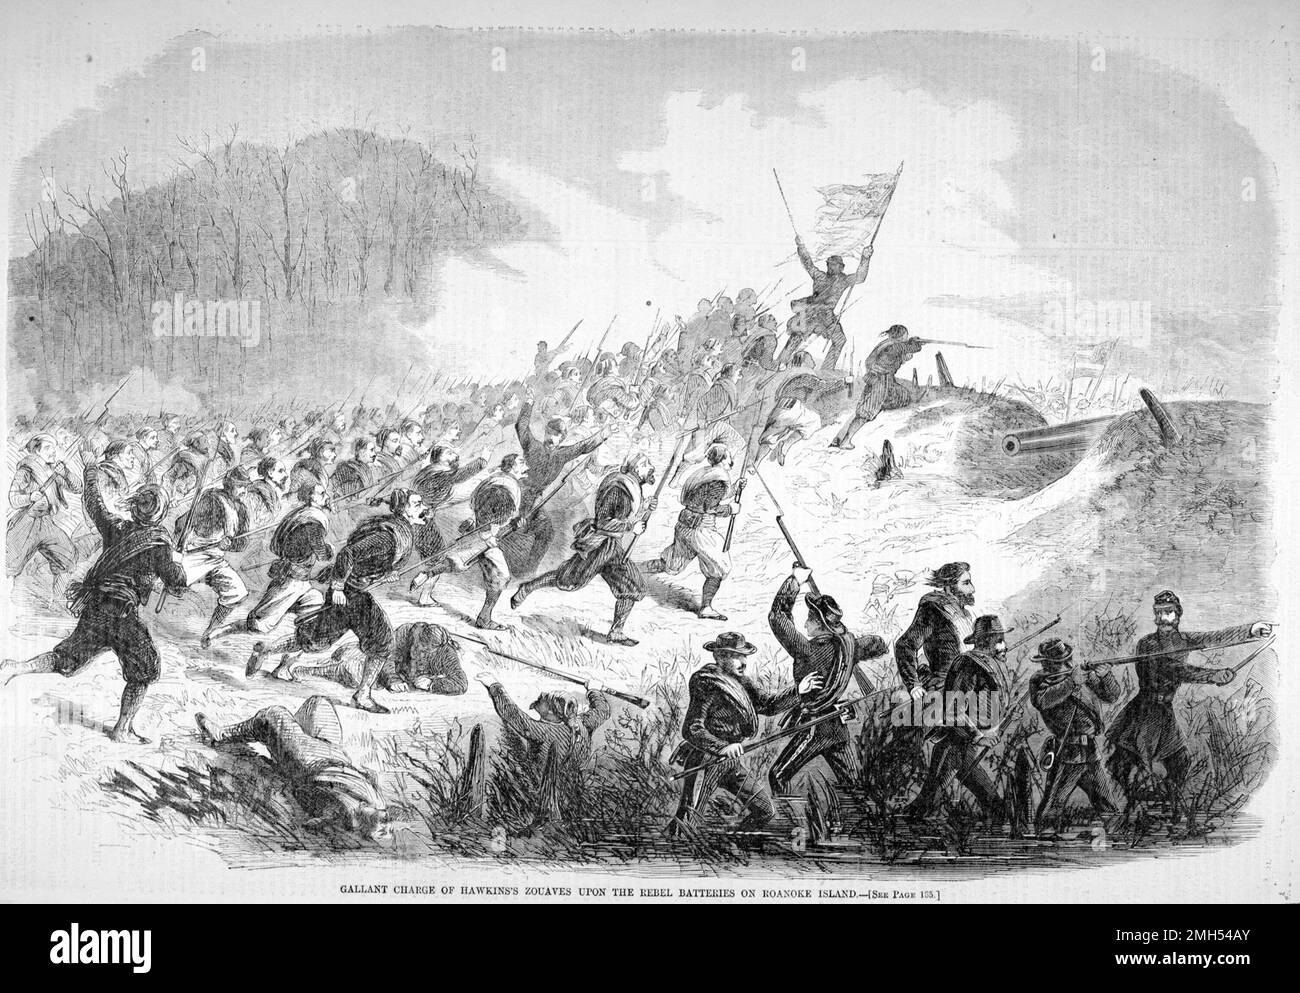 La Batalla de la Isla Roanoke fue una batalla en la Guerra Civil Americana que se libró del 7 al 8th de febrero de 1862 en Carolina del Norte. Fue un ataque anfibio unionista bajo el mando de Ambrose Burnside, y fue una victoria unionista cuando la Isla fue capturada. La imagen representa una carga de los Zouaves de Hawkins Foto de stock